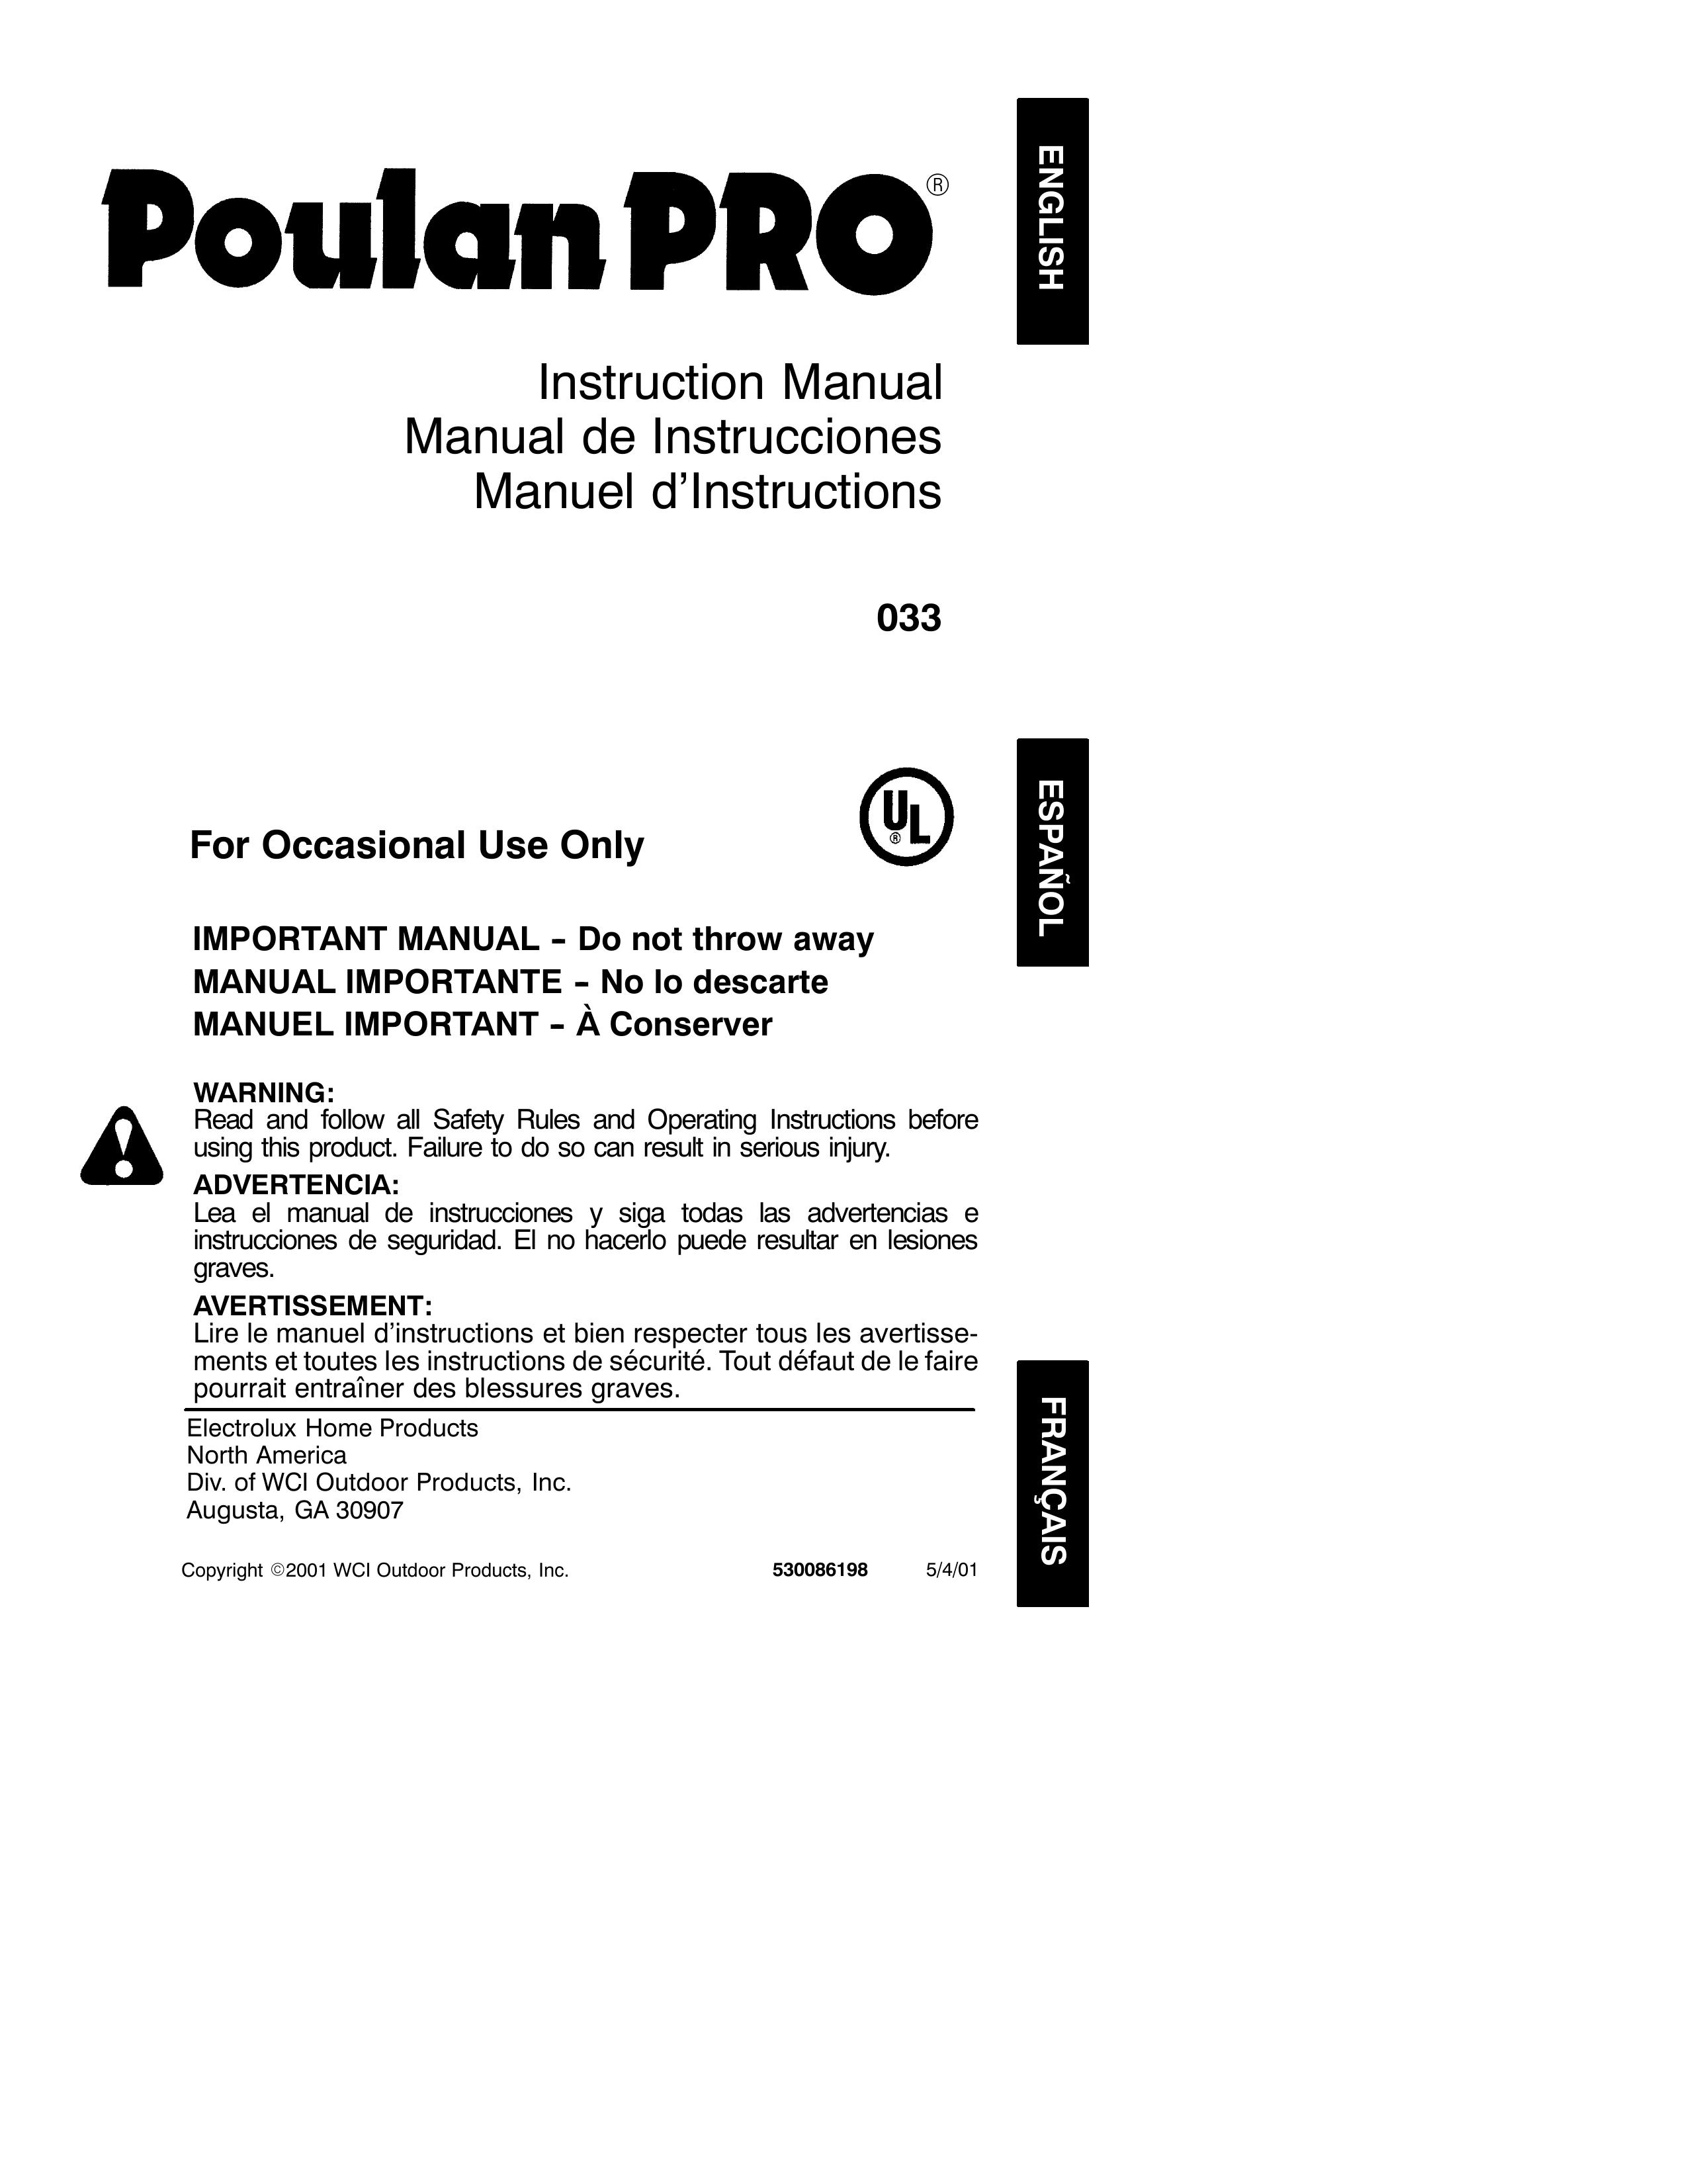 Poulan 33 Trimmer User Manual